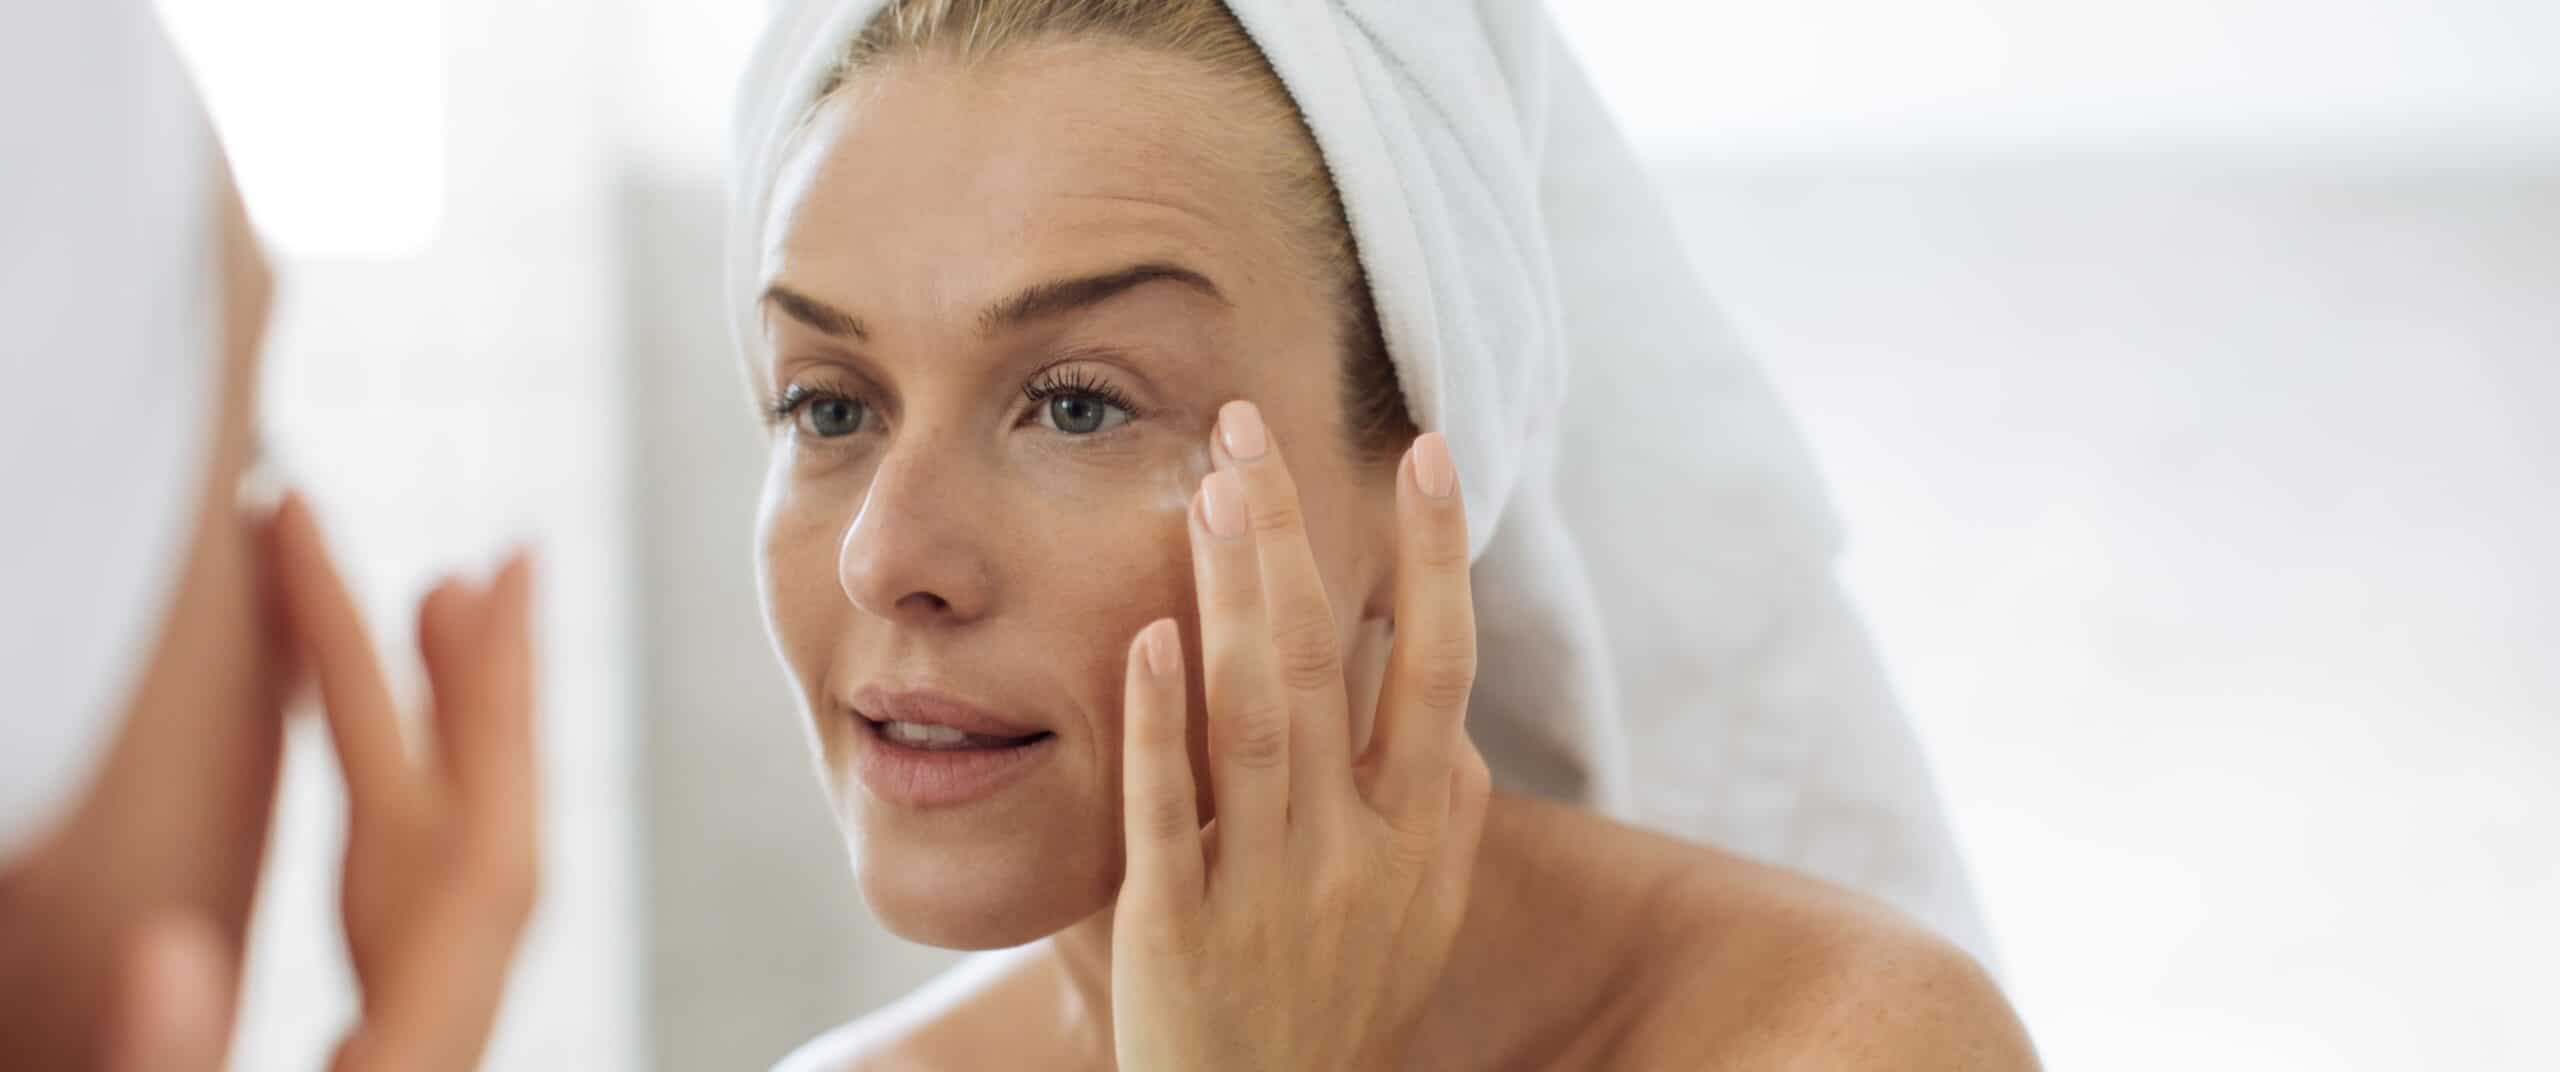 Bye, Hautprobleme: Das sind unsere besten Tipps & Wirkstoffe für Problemhaut!